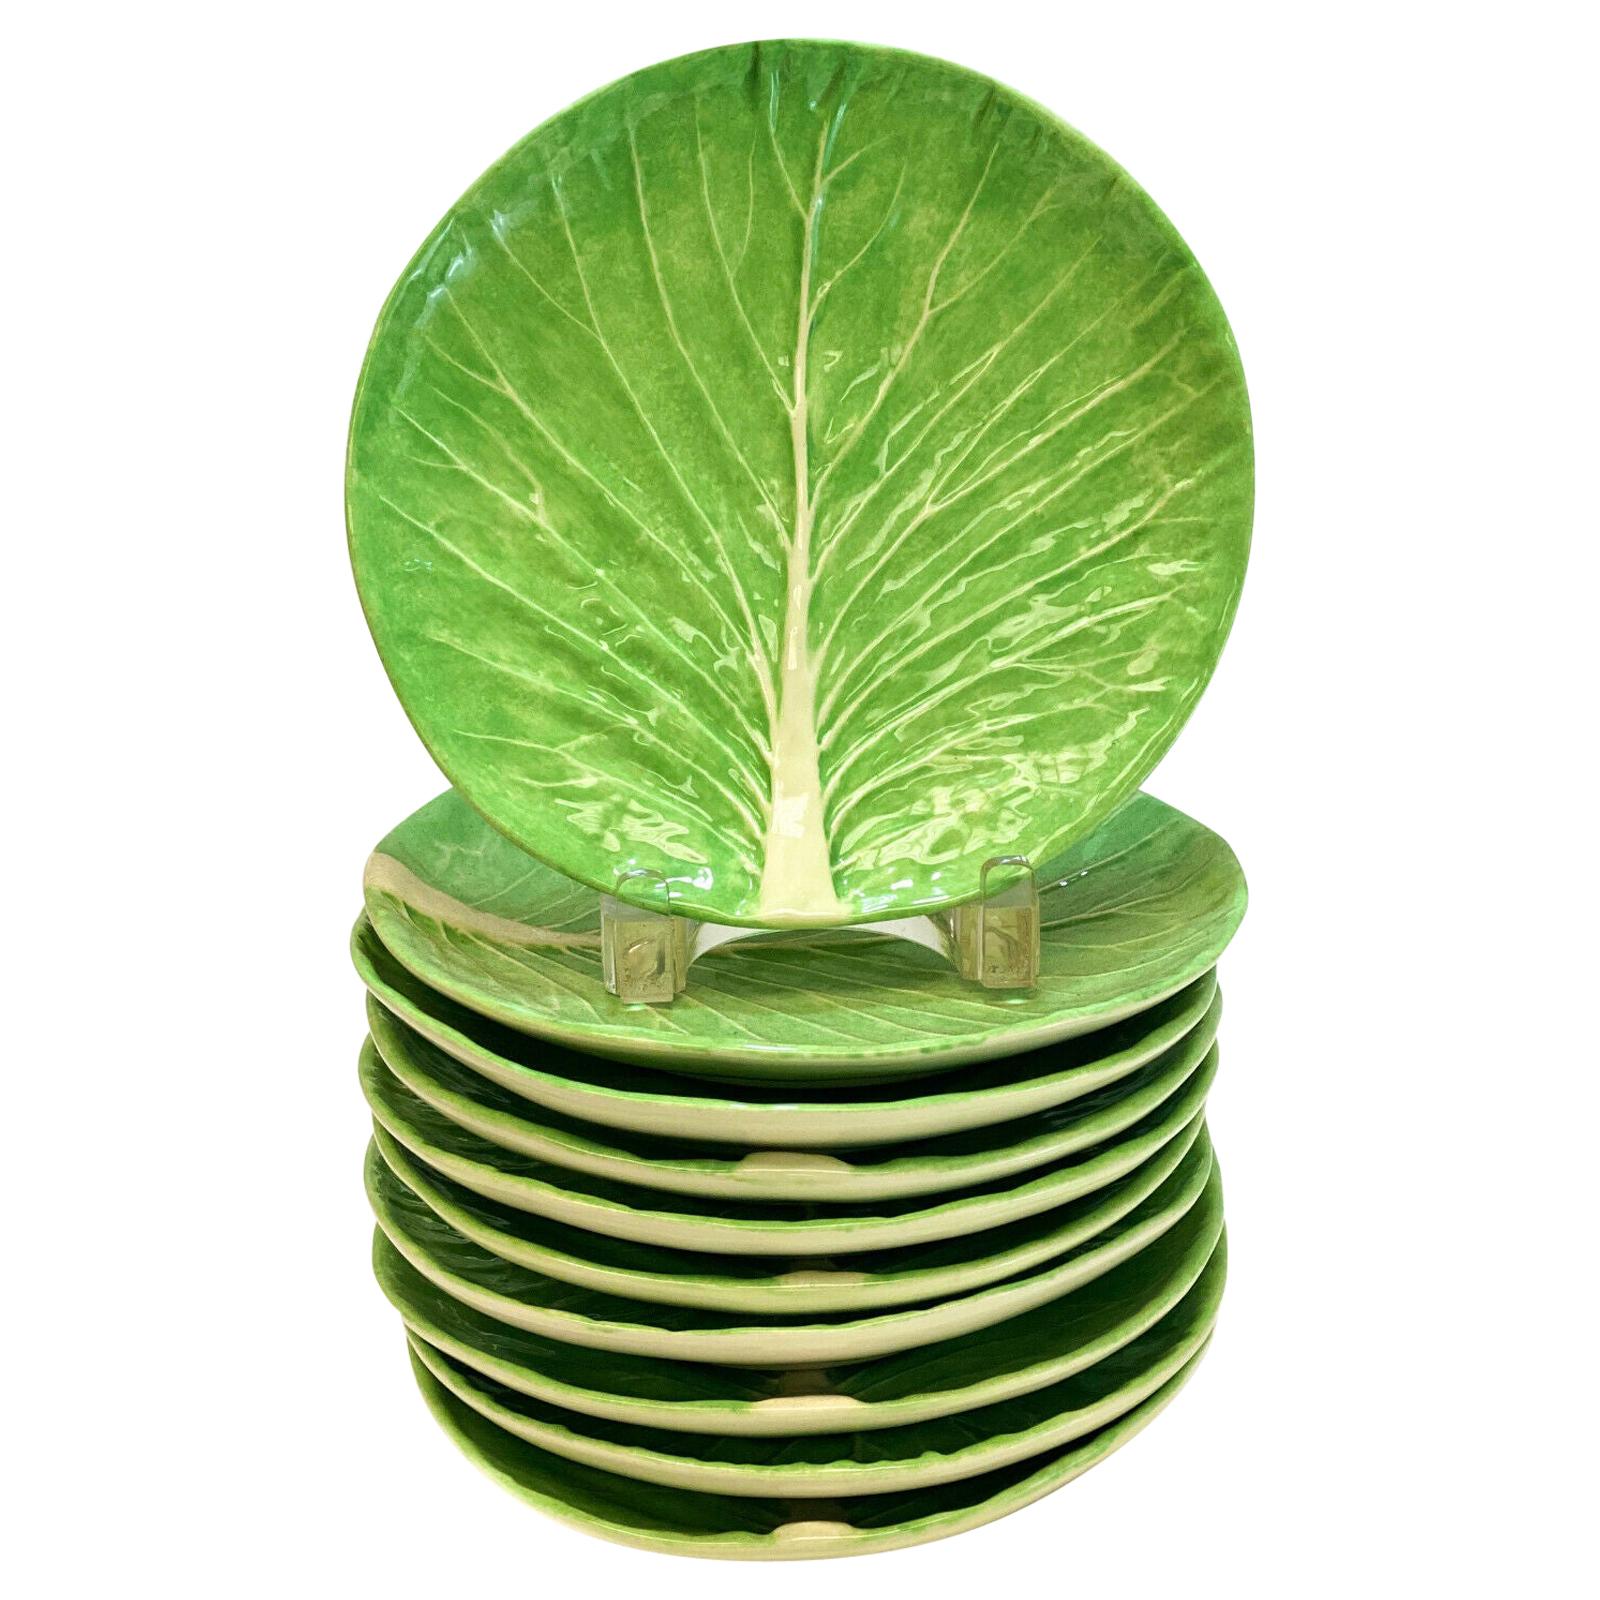 10 Dodie Thayer Jupiter Lettuce Leaf Earthenware Porcelain Luncheon Plates For Sale